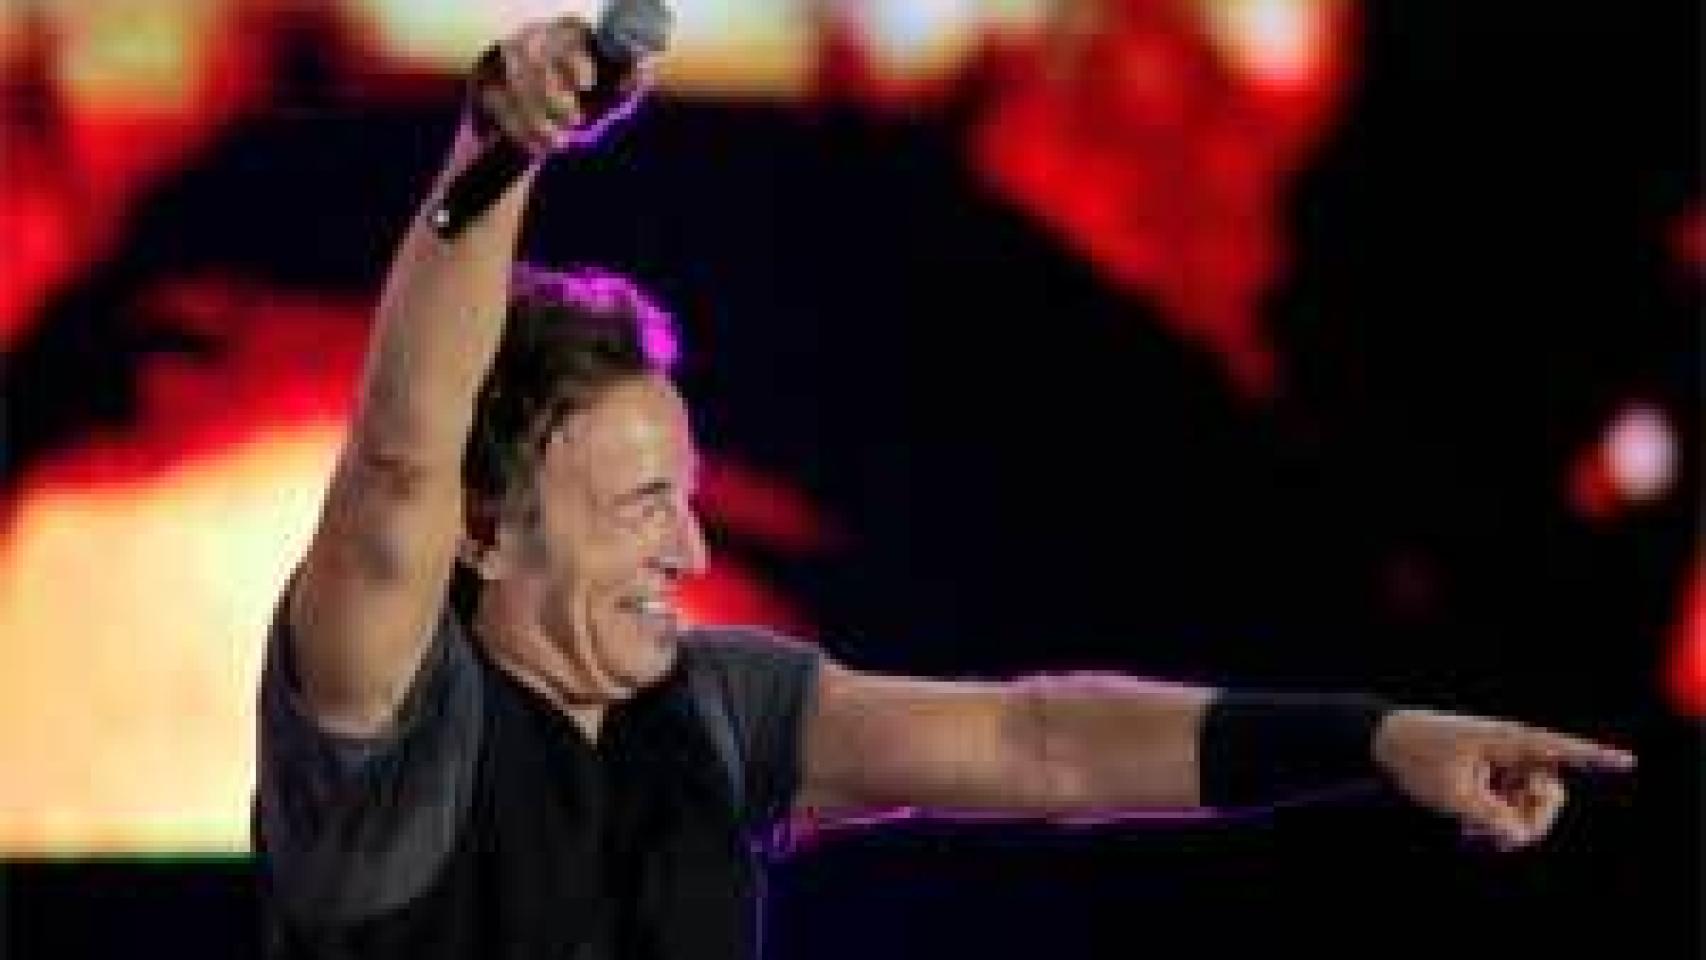 Image: Decenas de denuncias por caos en el concierto de Bruce Springsteen en Santiago